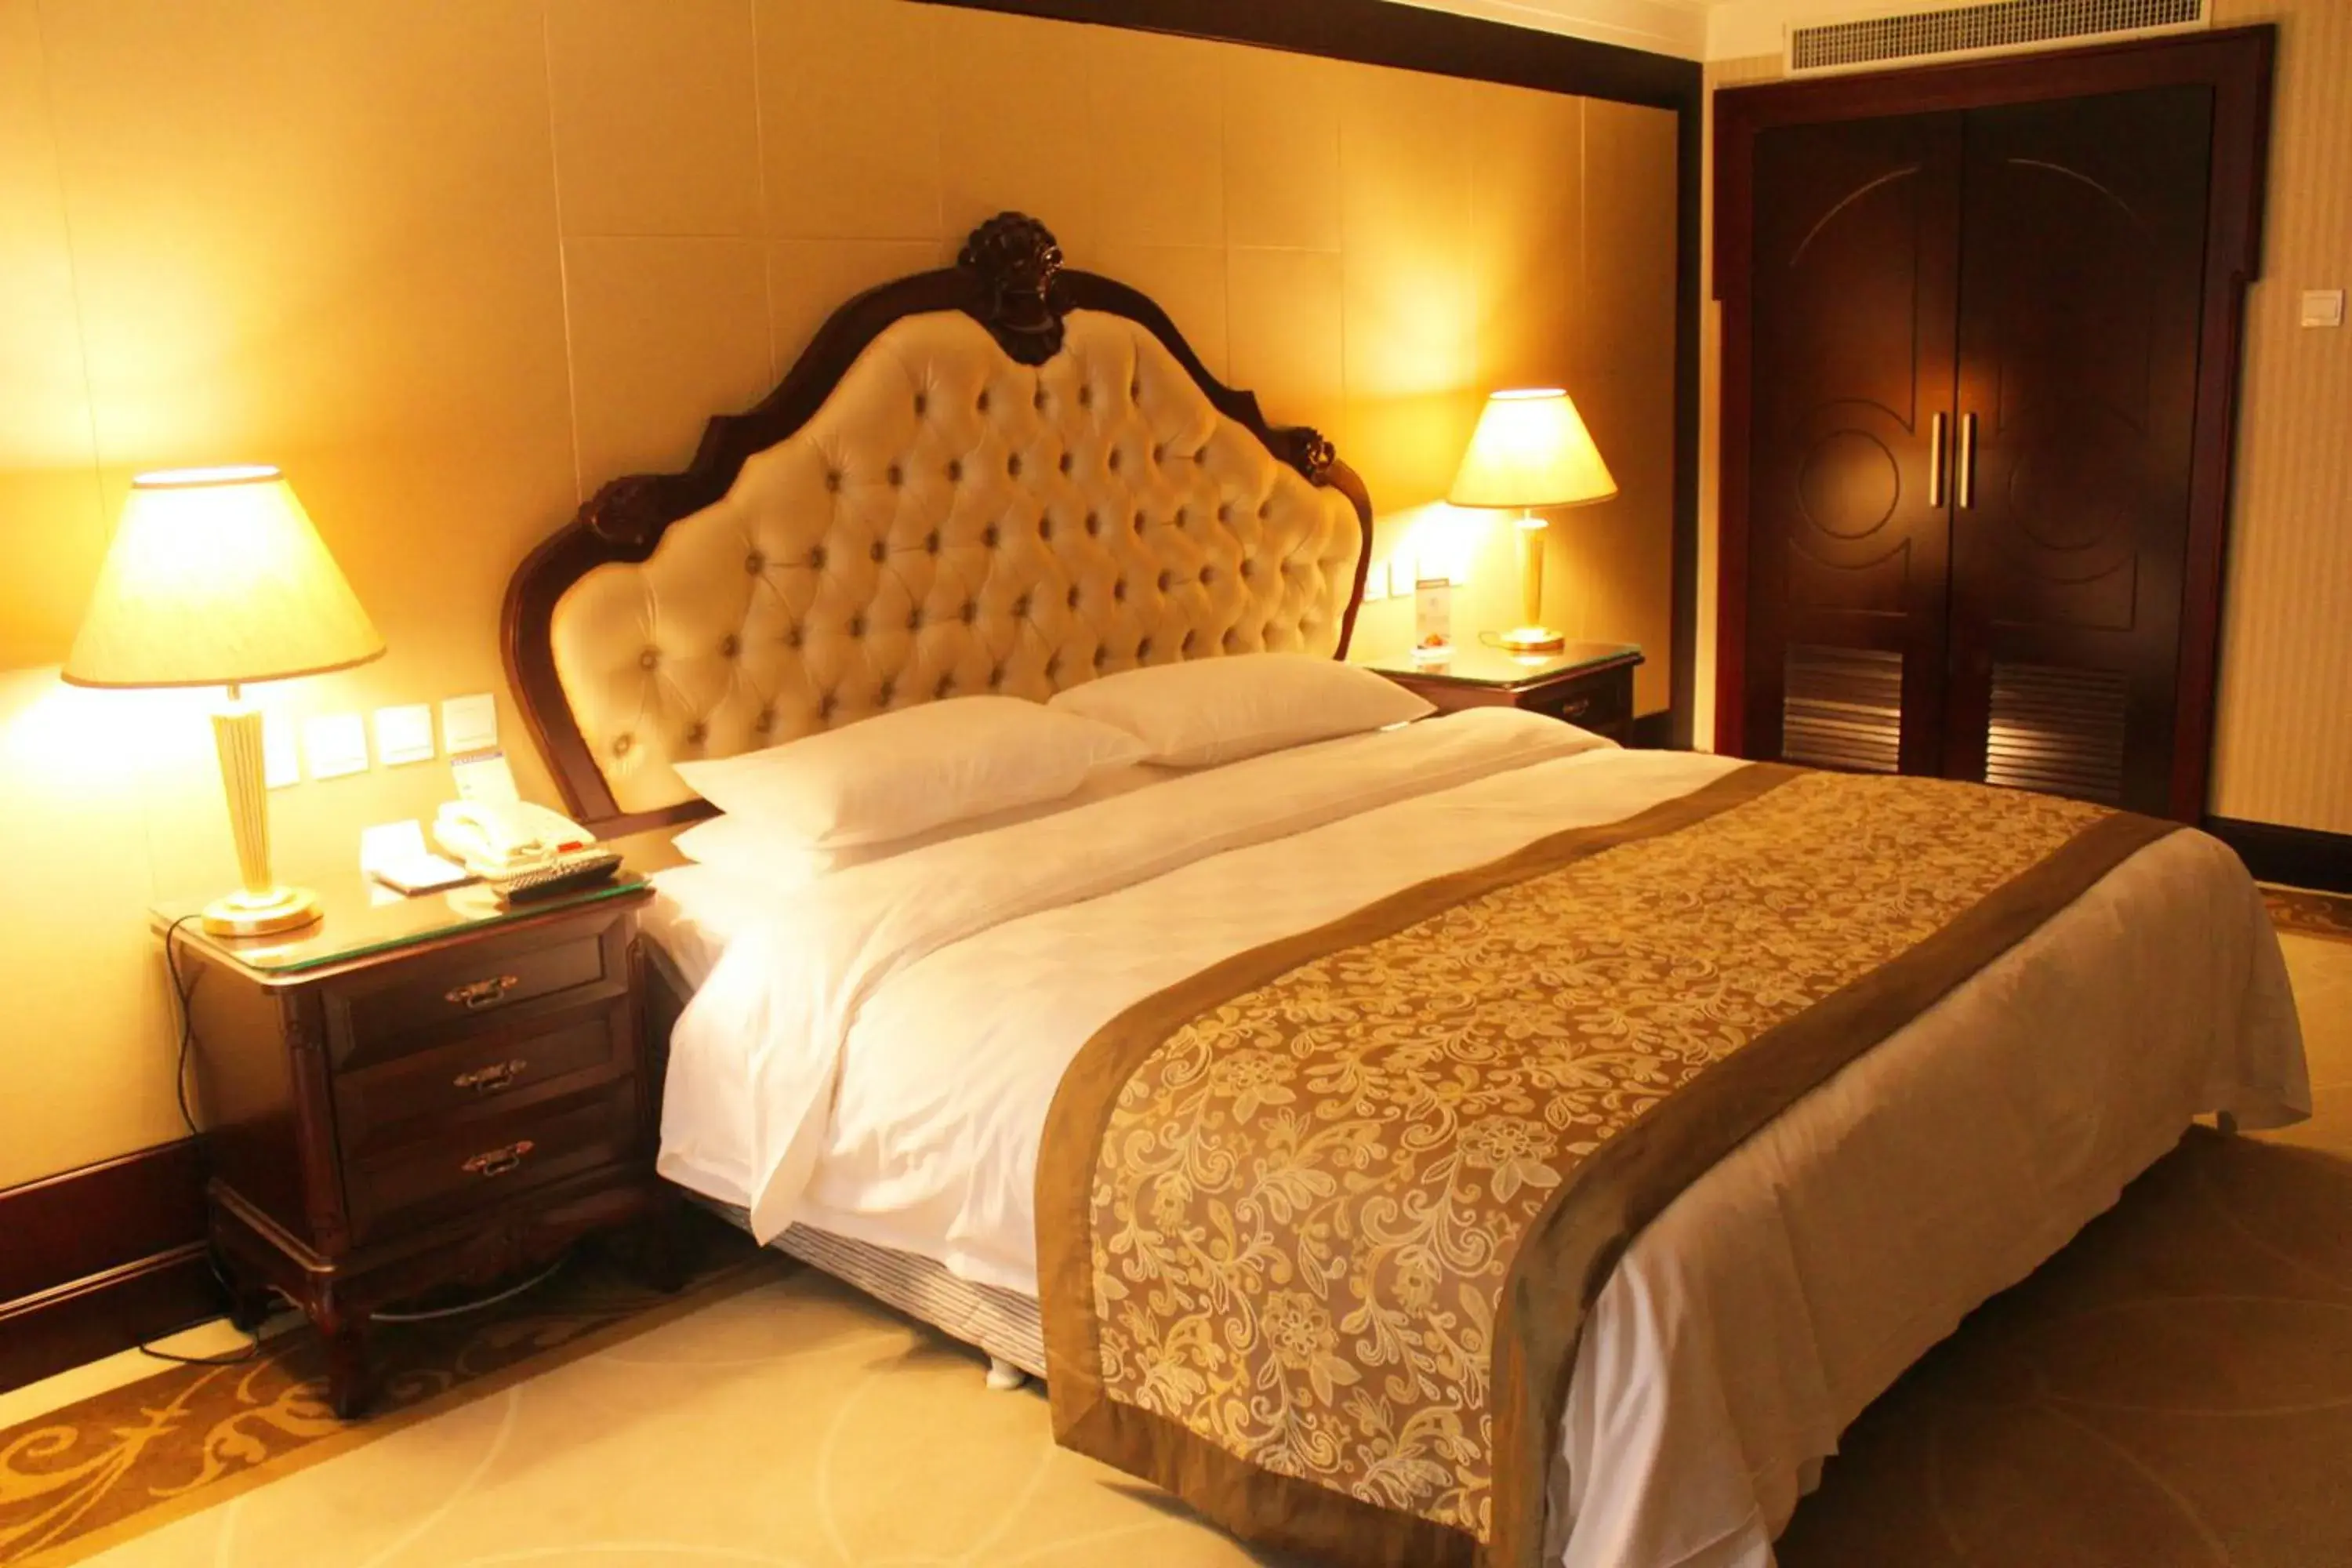 Bedroom, Room Photo in Beijing Continental Grand Hotel